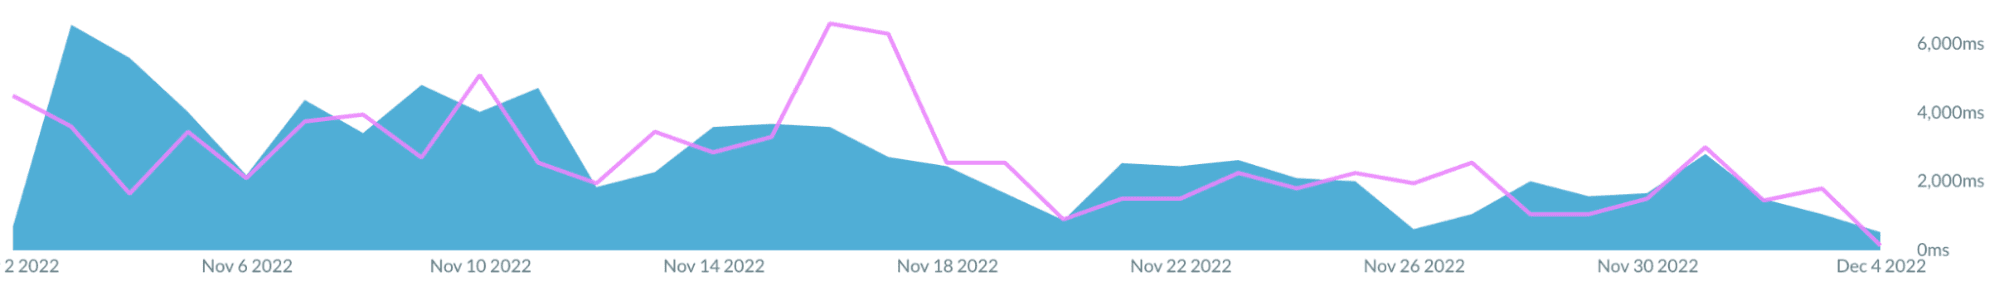 Zrzut ekranu z wykresem w Akamai mPulse, który przedstawia spadek wartości TBT w ciągu około miesiąca.